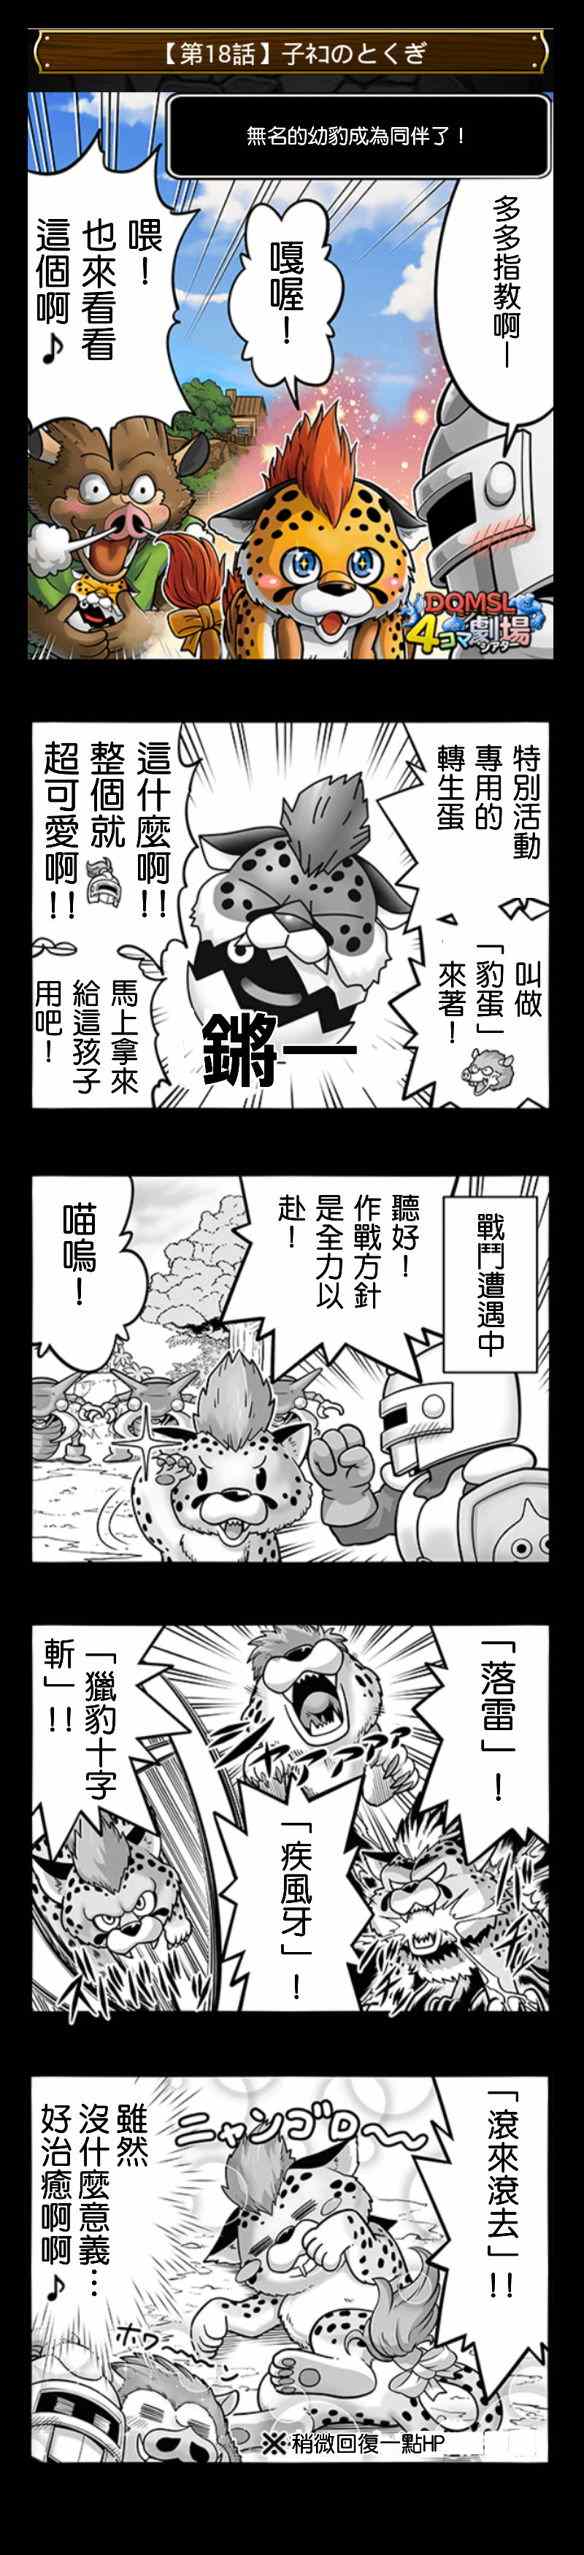 《勇者斗恶龙官方四格》漫画 11-20集